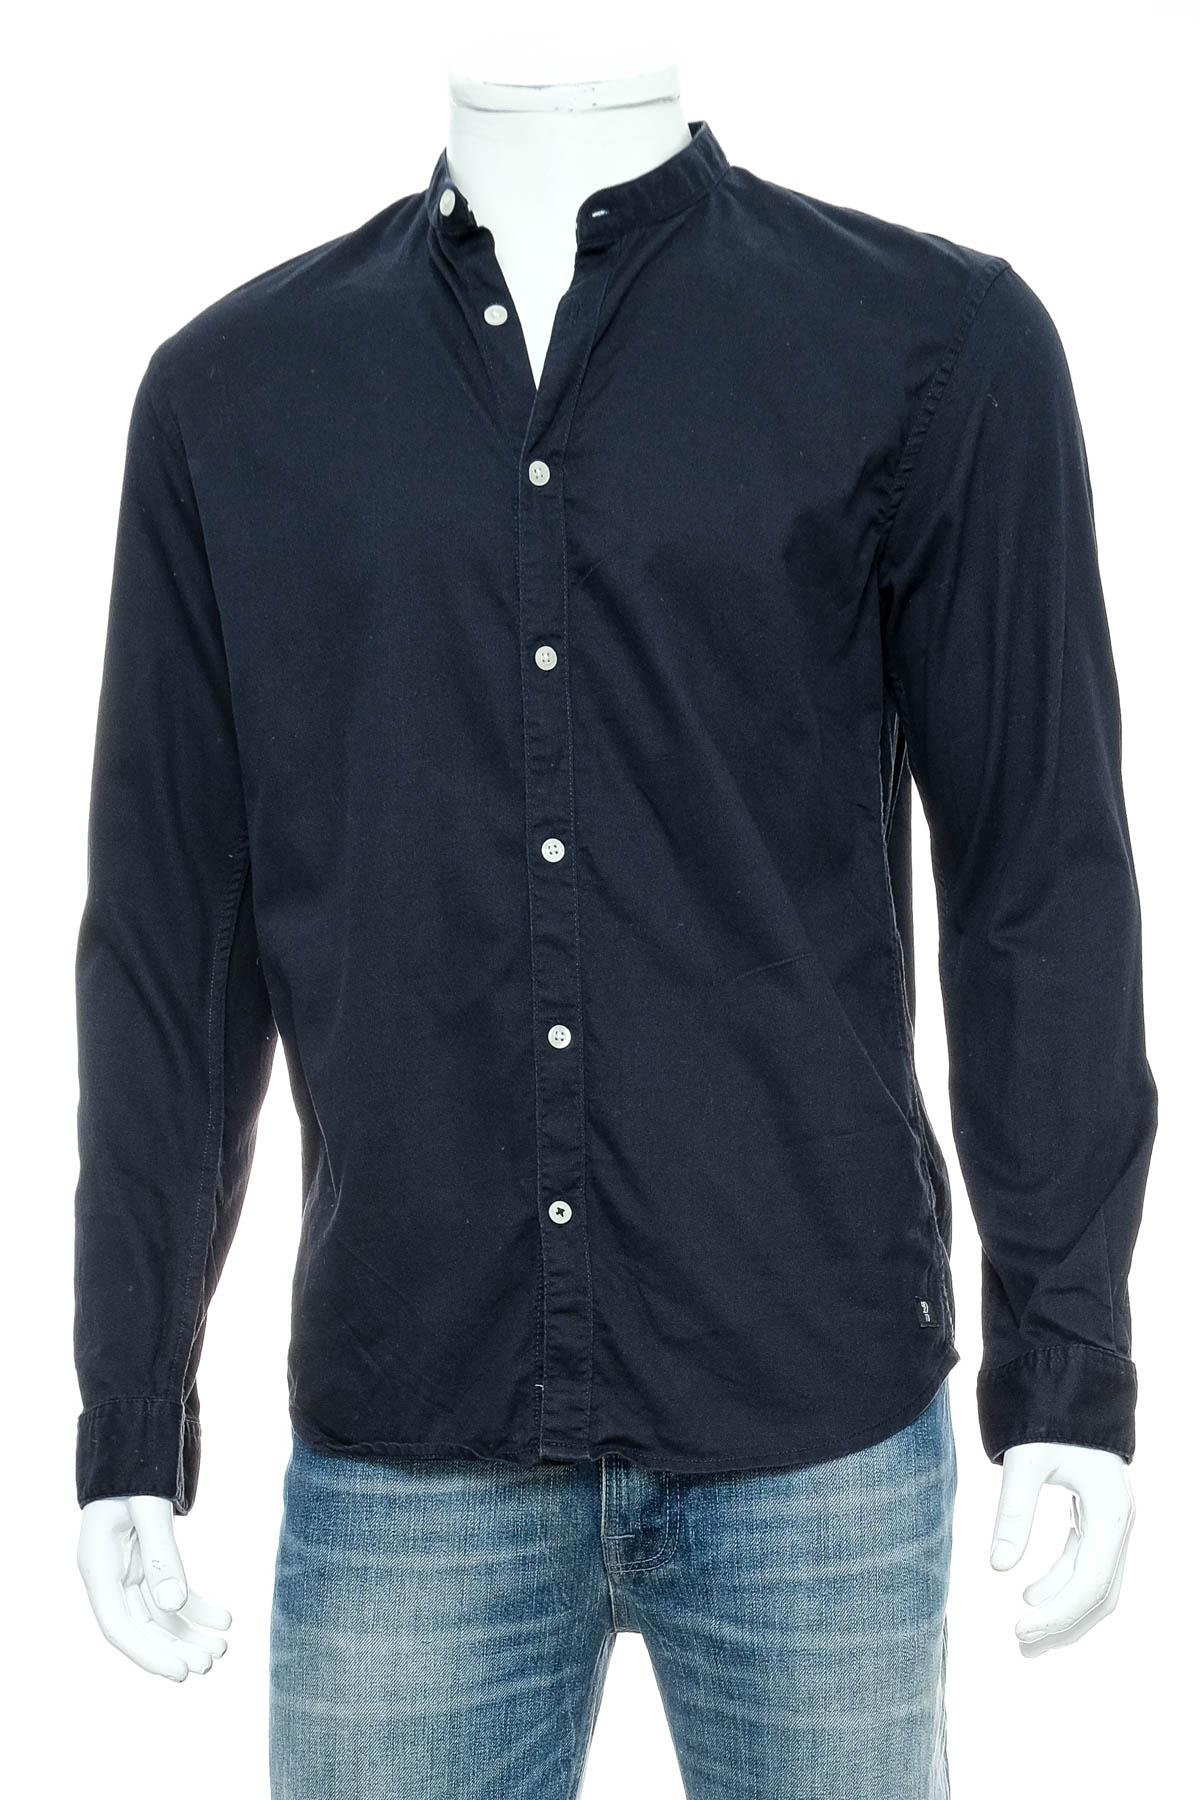 Men's shirt - TOM TAILOR Denim - 0